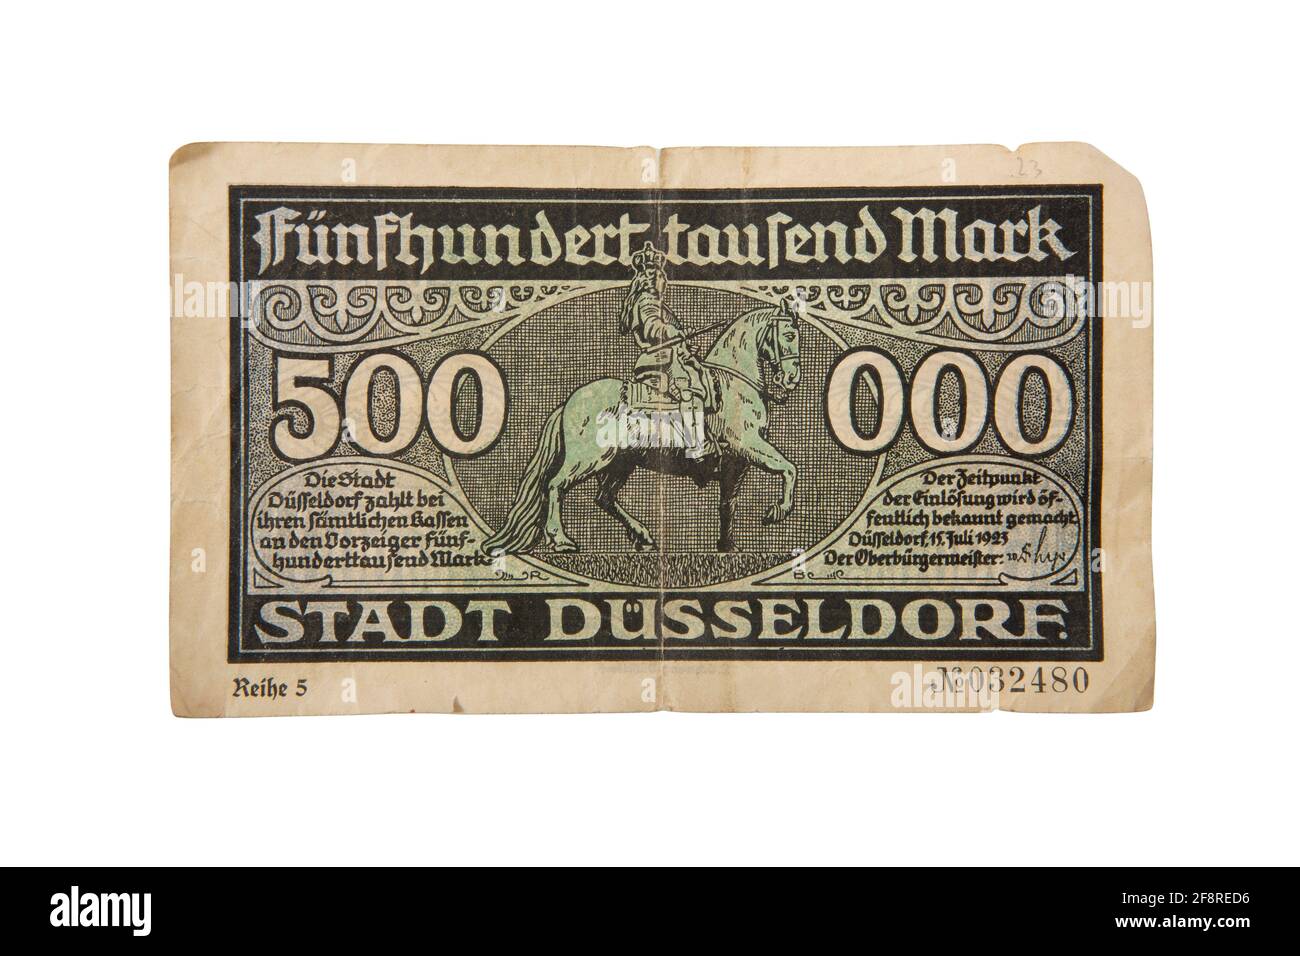 Geldschein über 500000 Mark der Stadt Düsseldorf. Fünfhunderttausen Mark Geldschein aus der Zeit der Inflation in den 20er Jahren nach dem 1. Weltkrie. Stock Photo